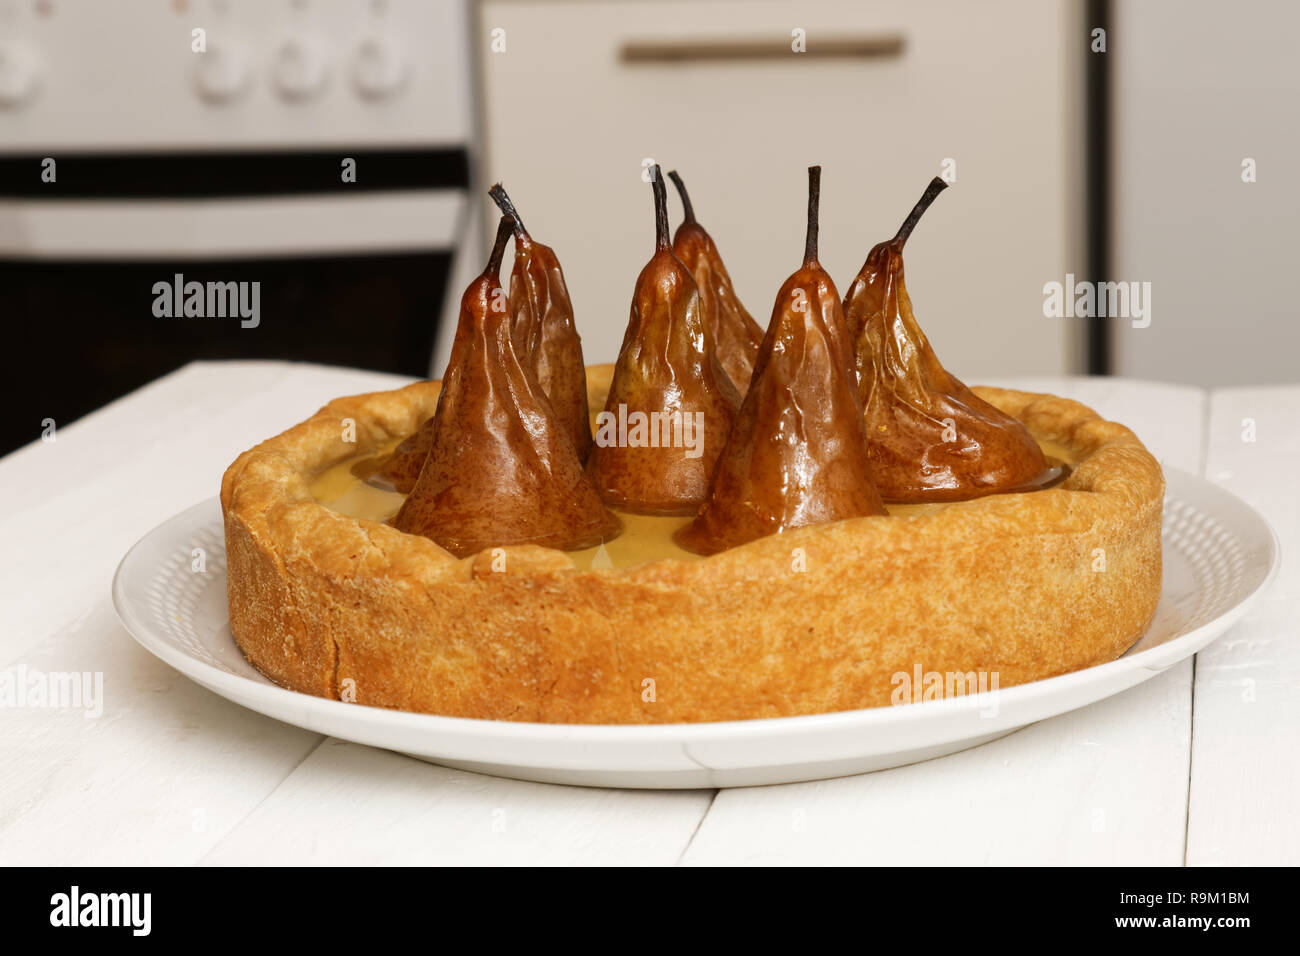 Torte mit Birnen, Sahne Butter und Marmelade auf einem unscharfen Hintergrund Küche Stockfoto